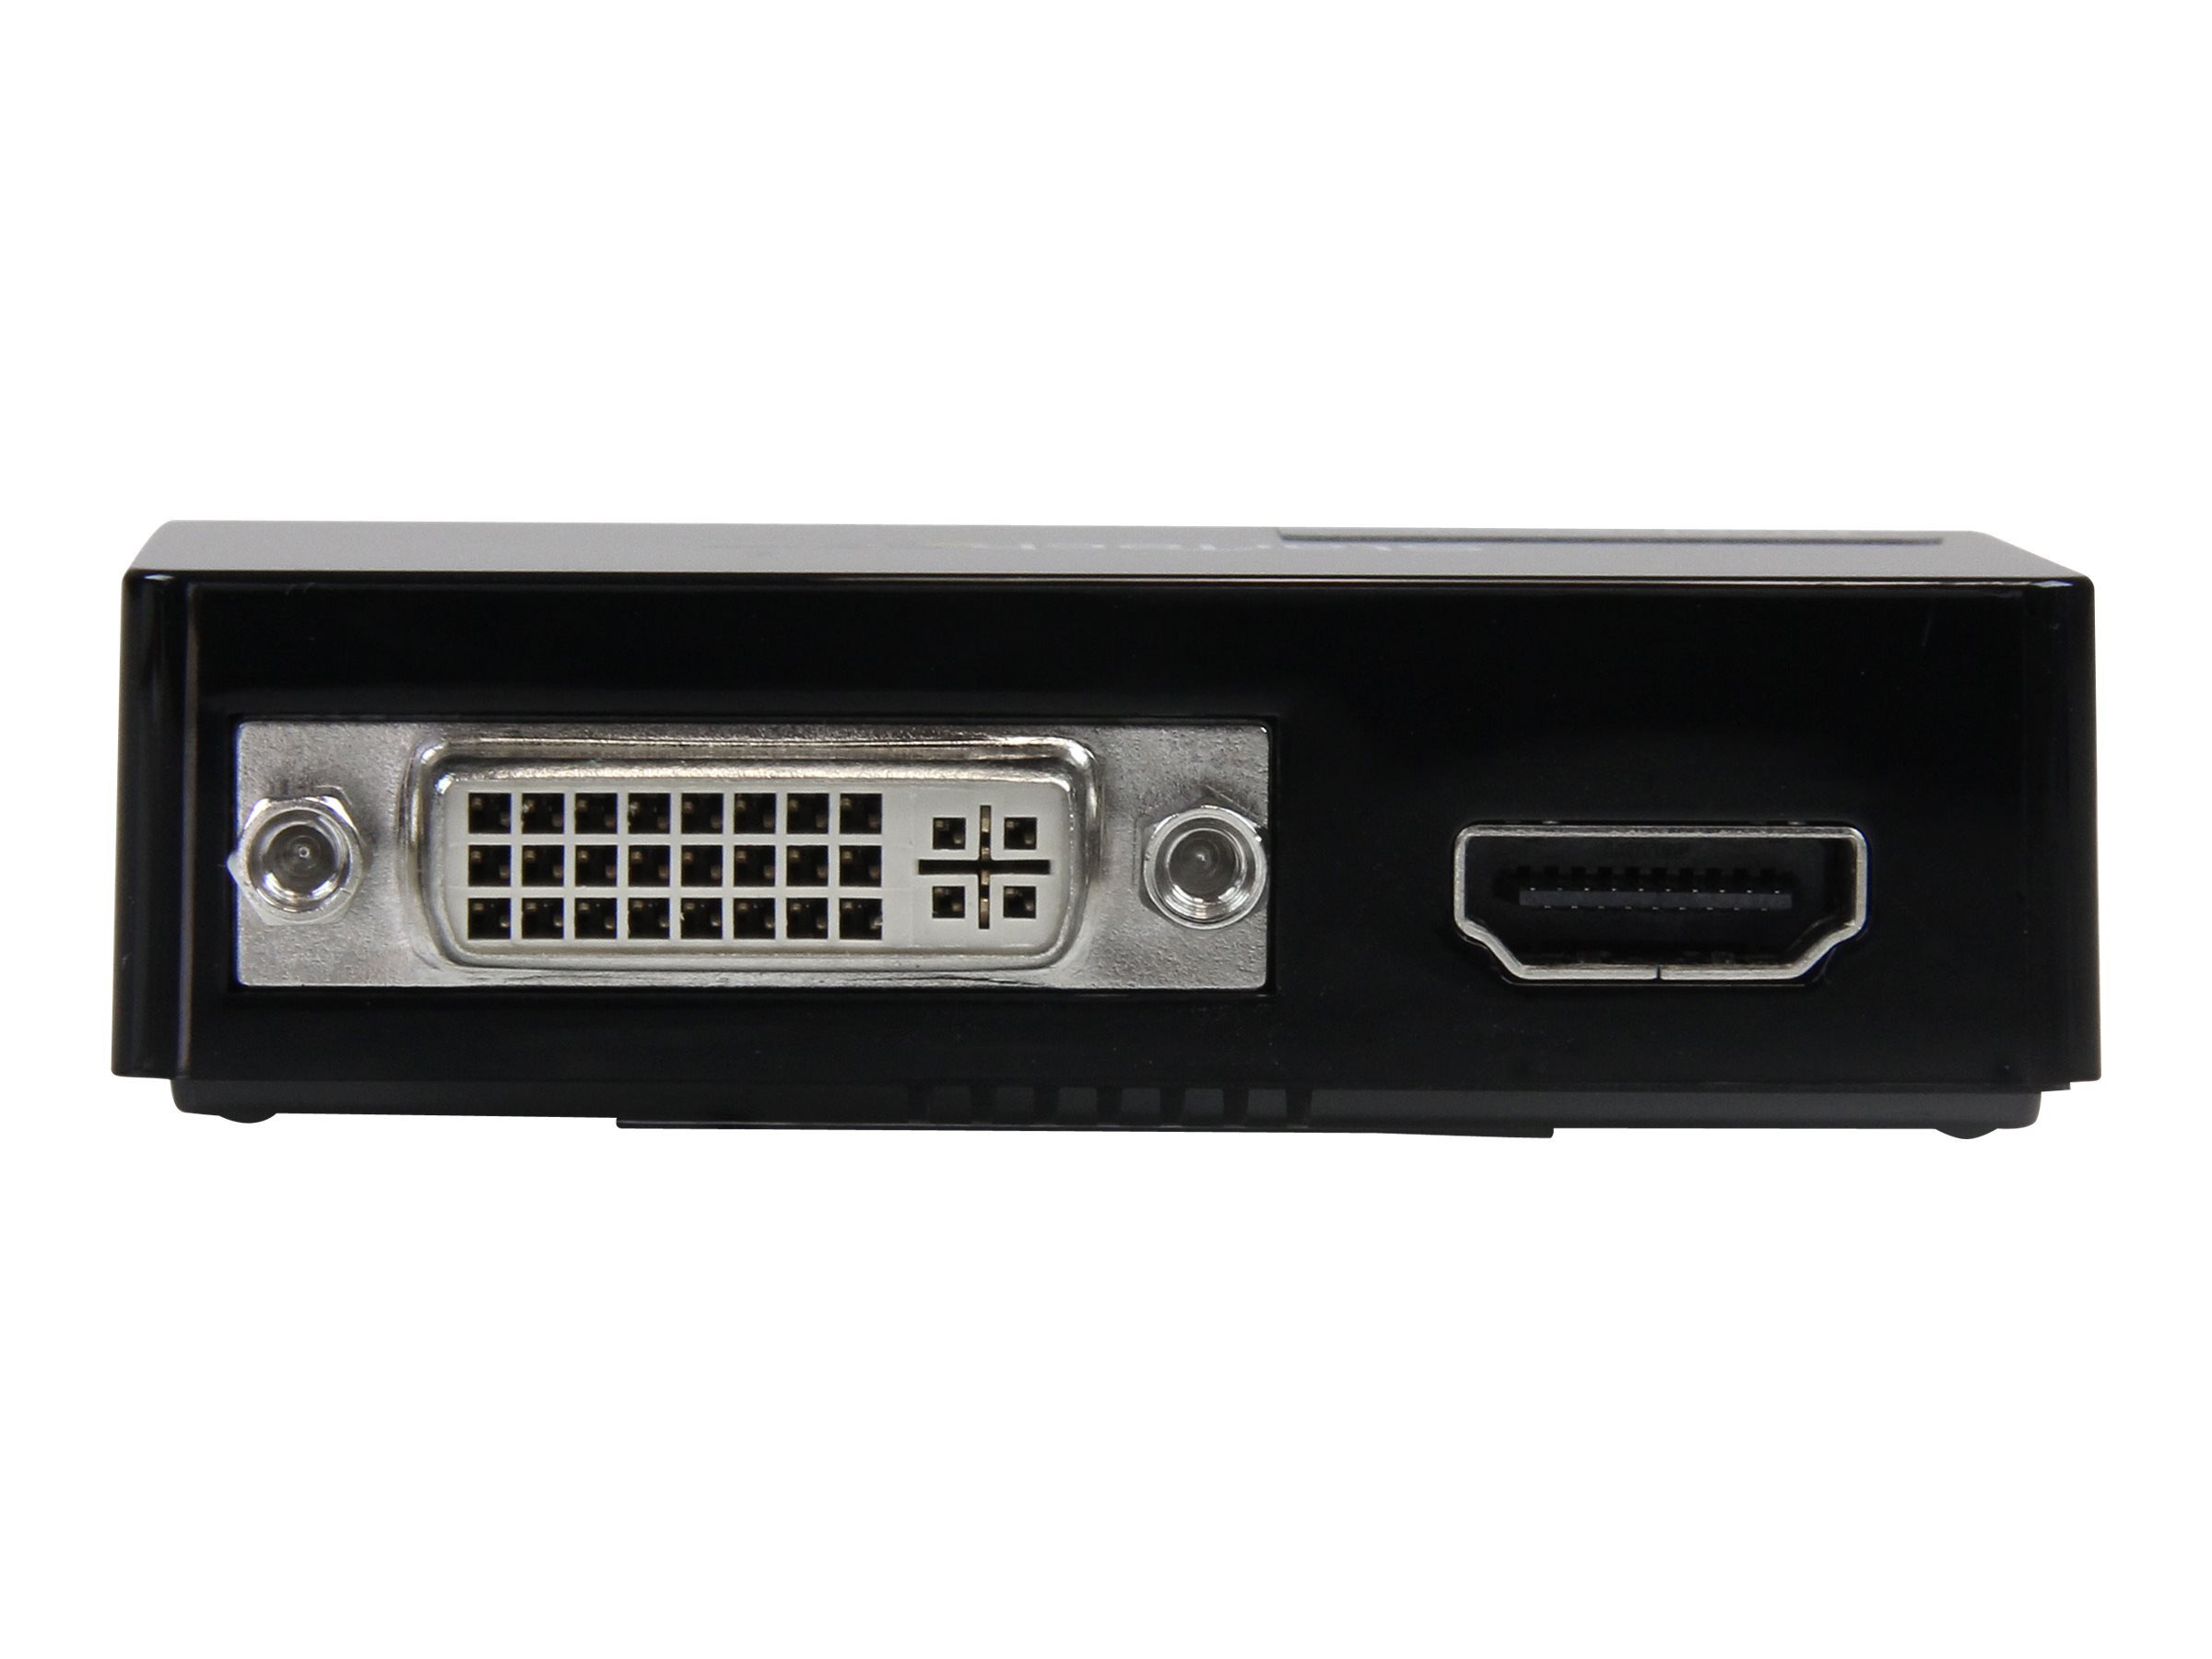 StarTech.com Adaptateur vidéo multi-écrans USB 3.0 vers HDMI et DVI - Carte graphique externe - M/F - 2048x1152 - Adaptateur vidéo - Conformité TAA - USB Type B femelle pour DVI-I, HDMI femelle - noir - prise en charge de 2048 x 1152 à 60 Hz - pour P/N: HDDVIMM3, HDMM12, HDMM15, HDMM1MP, HDMM2MP, HDMM3, HDMM3MP, HDMM50A, HDMM6, HDPMM50 - USB32HDDVII - Accessoires pour systèmes audio domestiques